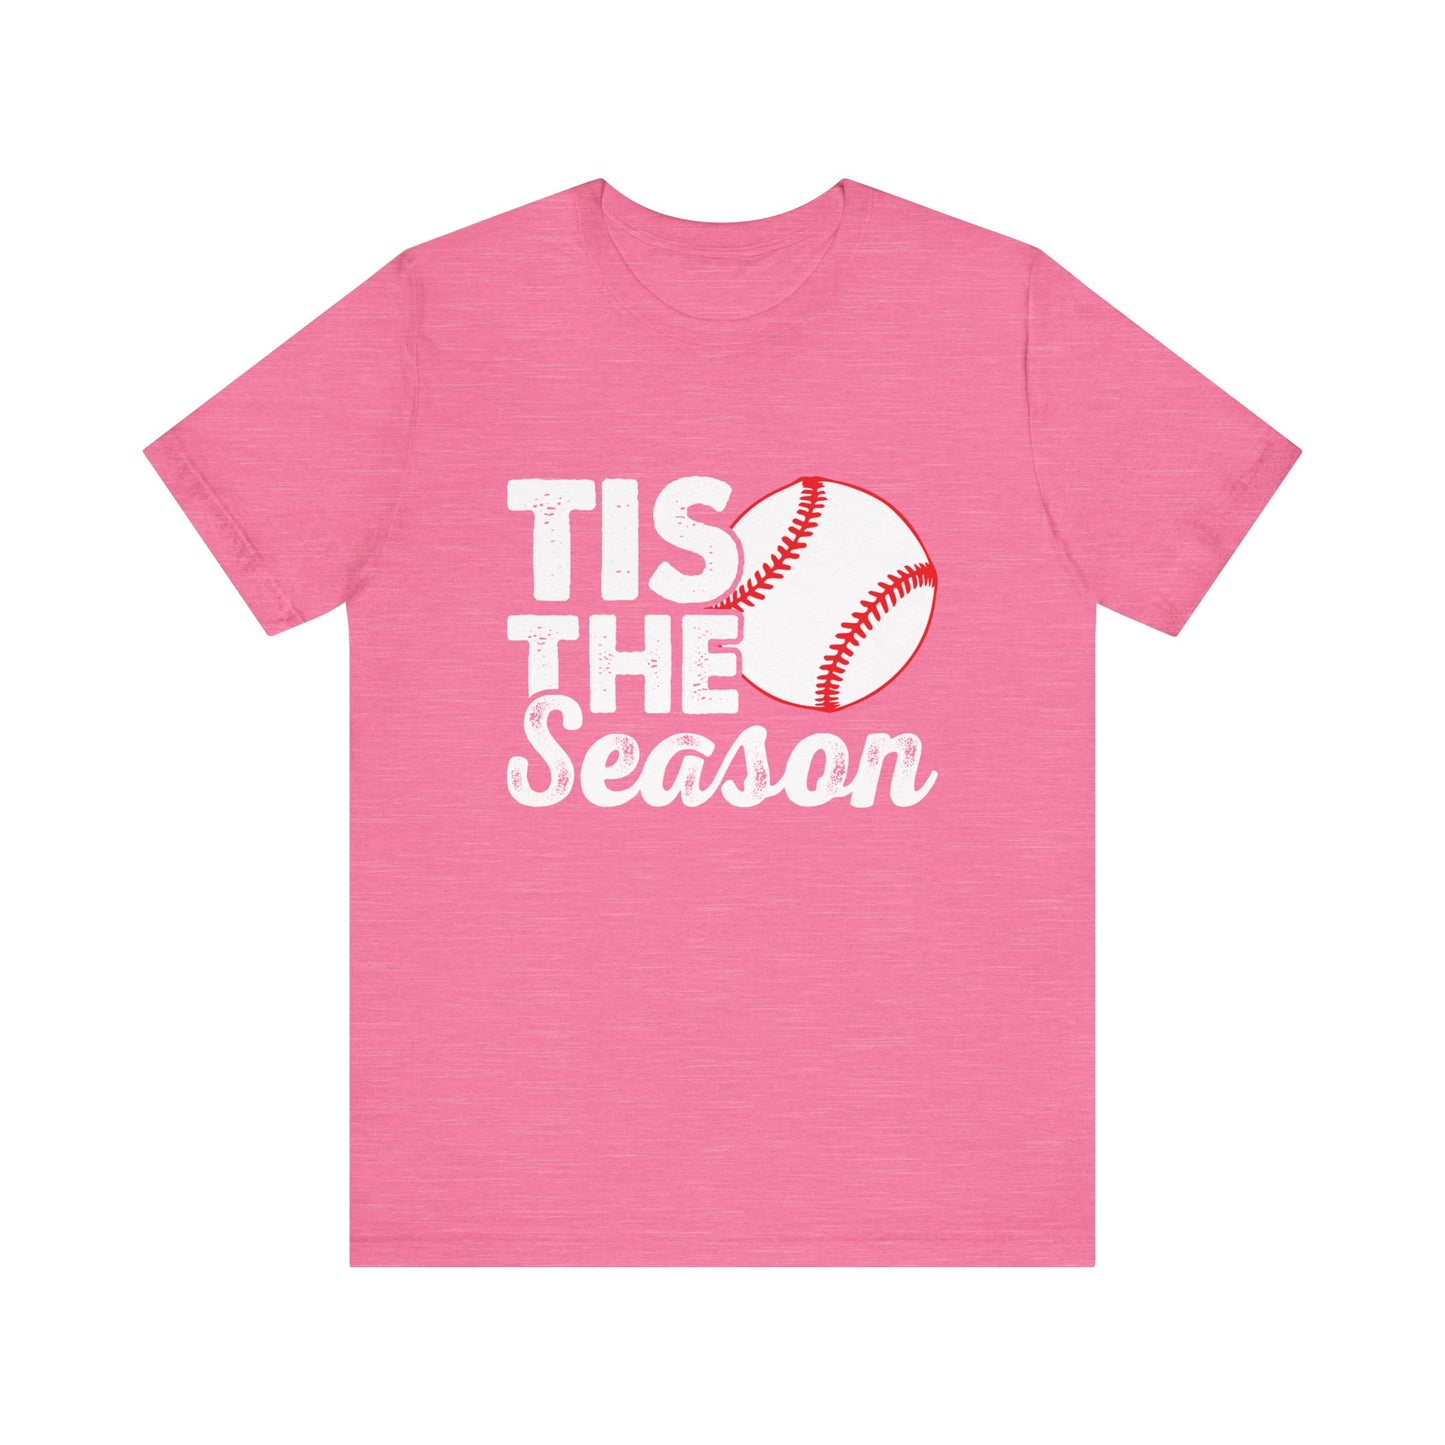 Tis the Season Baseball Adult Unisex Men's Women's Short Sleeve Shirt